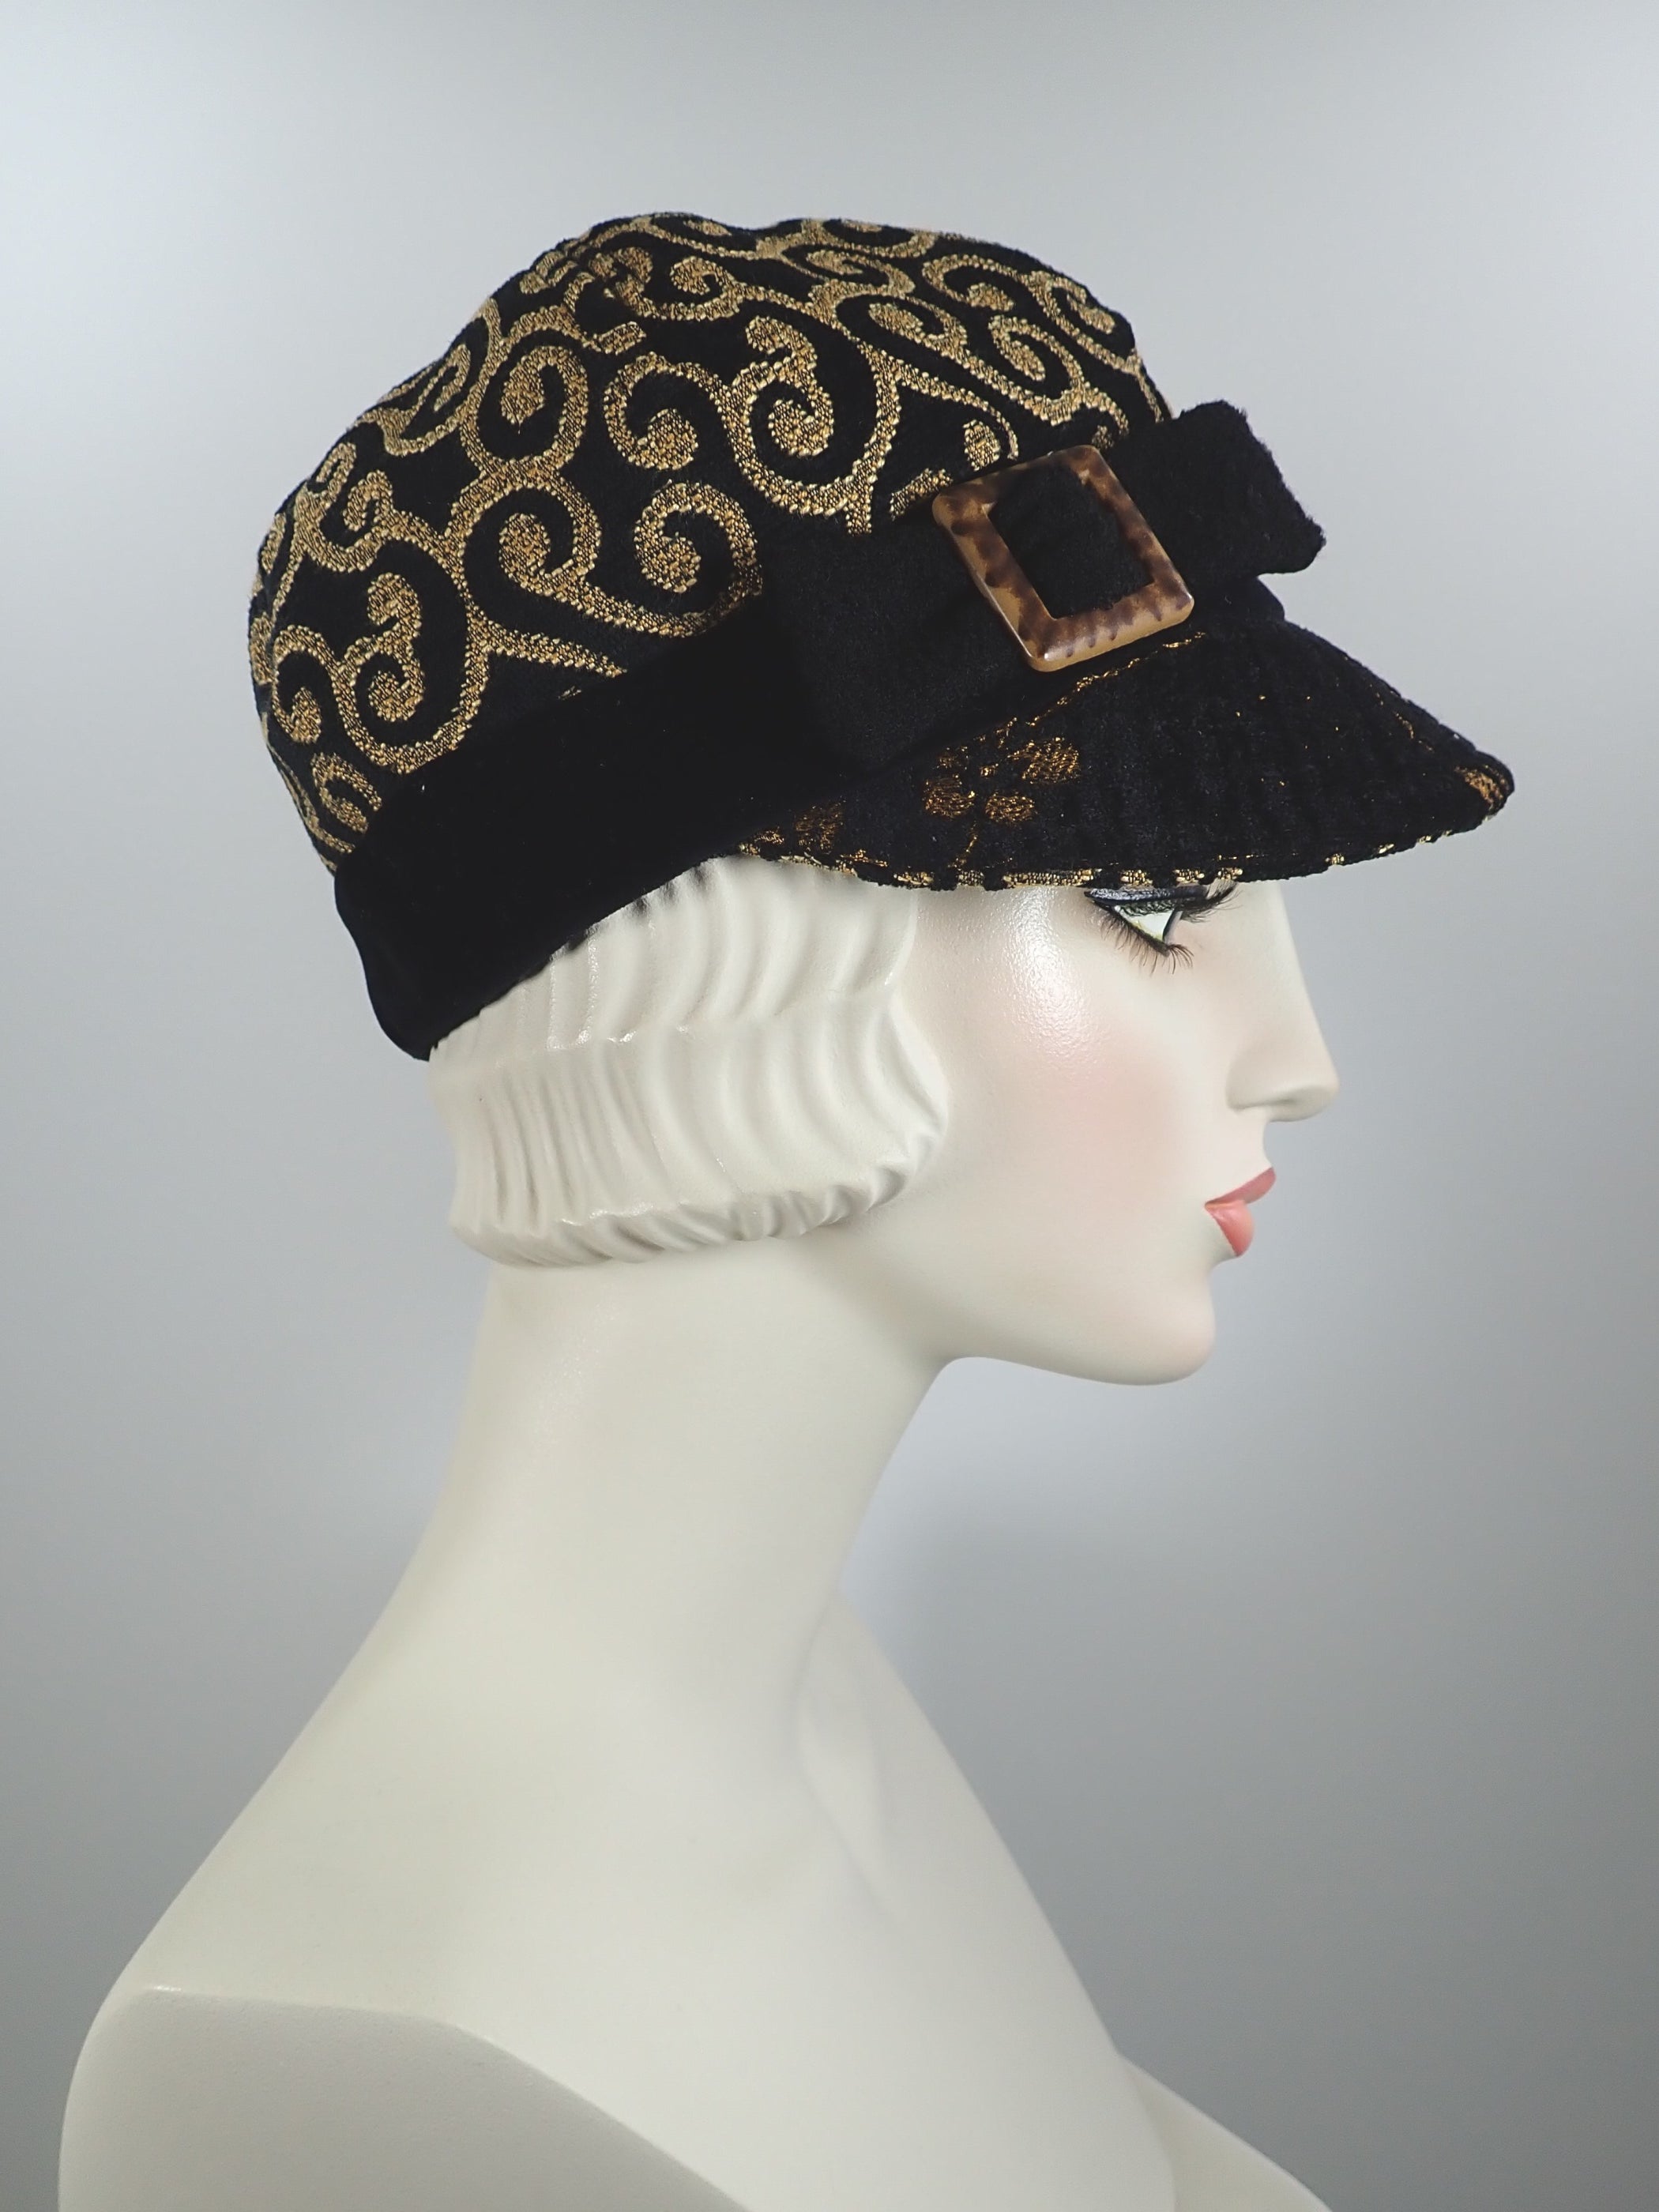 Womens velvet baseball cap in black and gold, vintage buckle